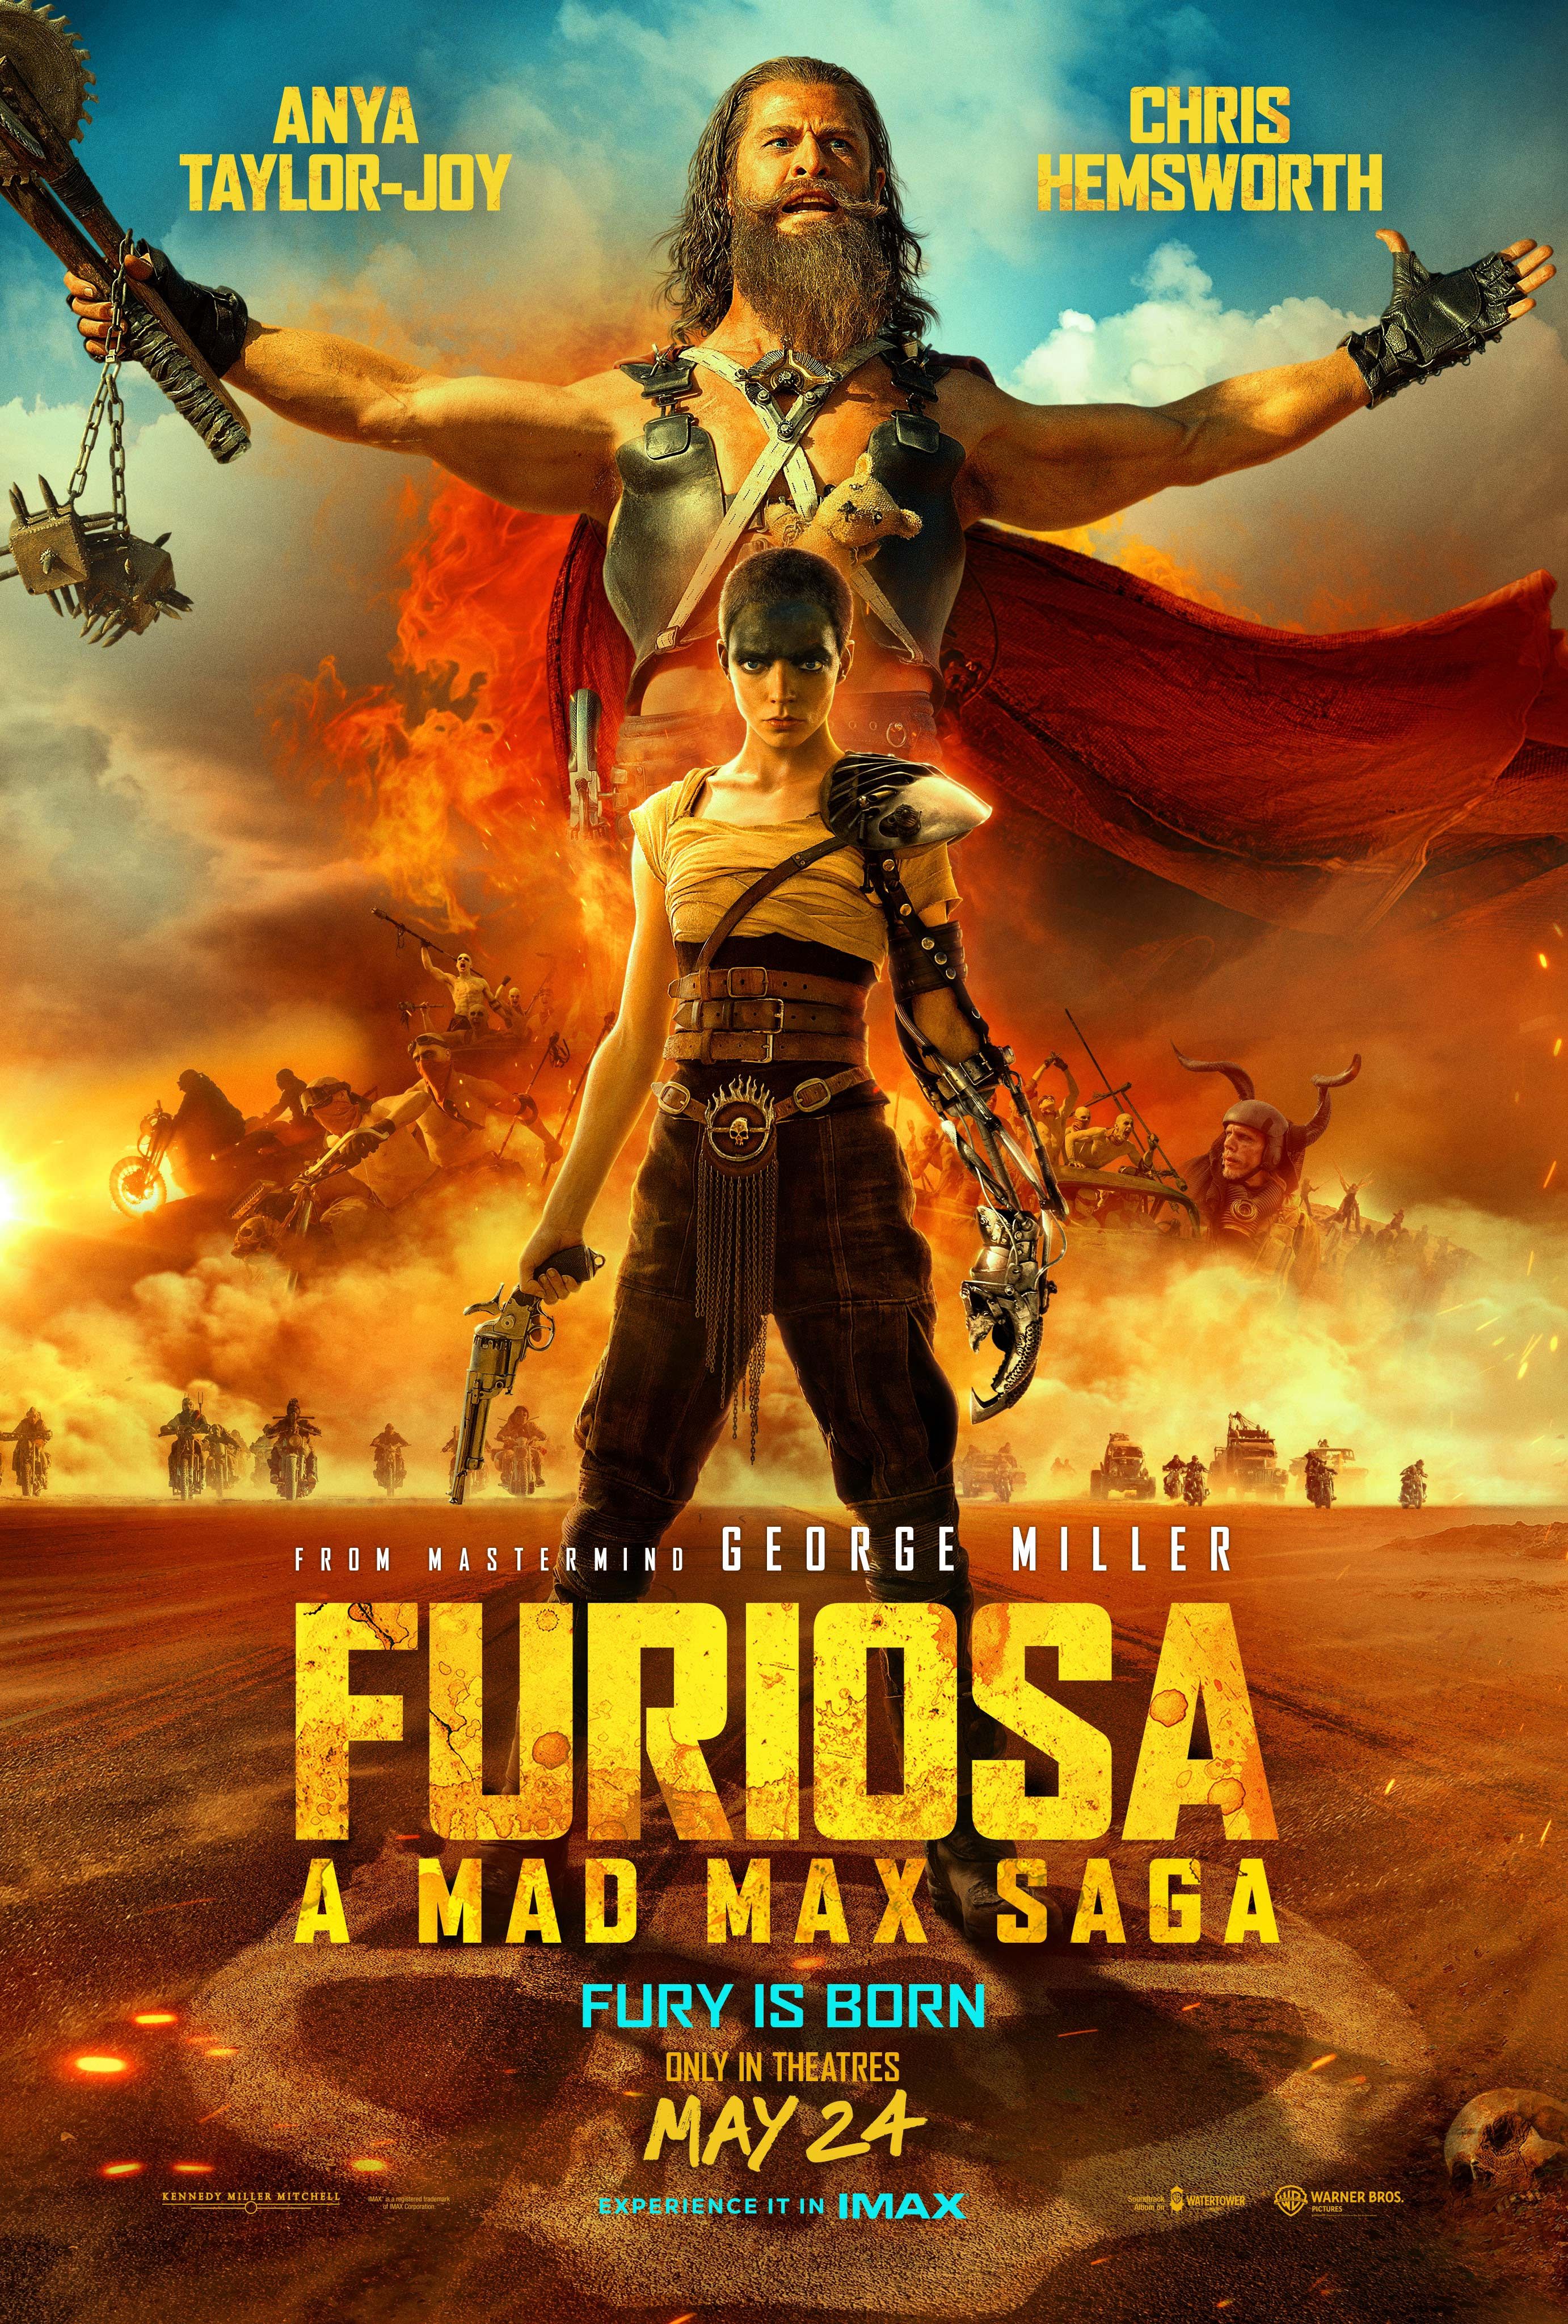 El póster de Furiosa Mad Max Saga muestra a Anya Taylor-Joy como Furiosa y Chris Hemsworth parados frente a una pandilla de motociclistas.